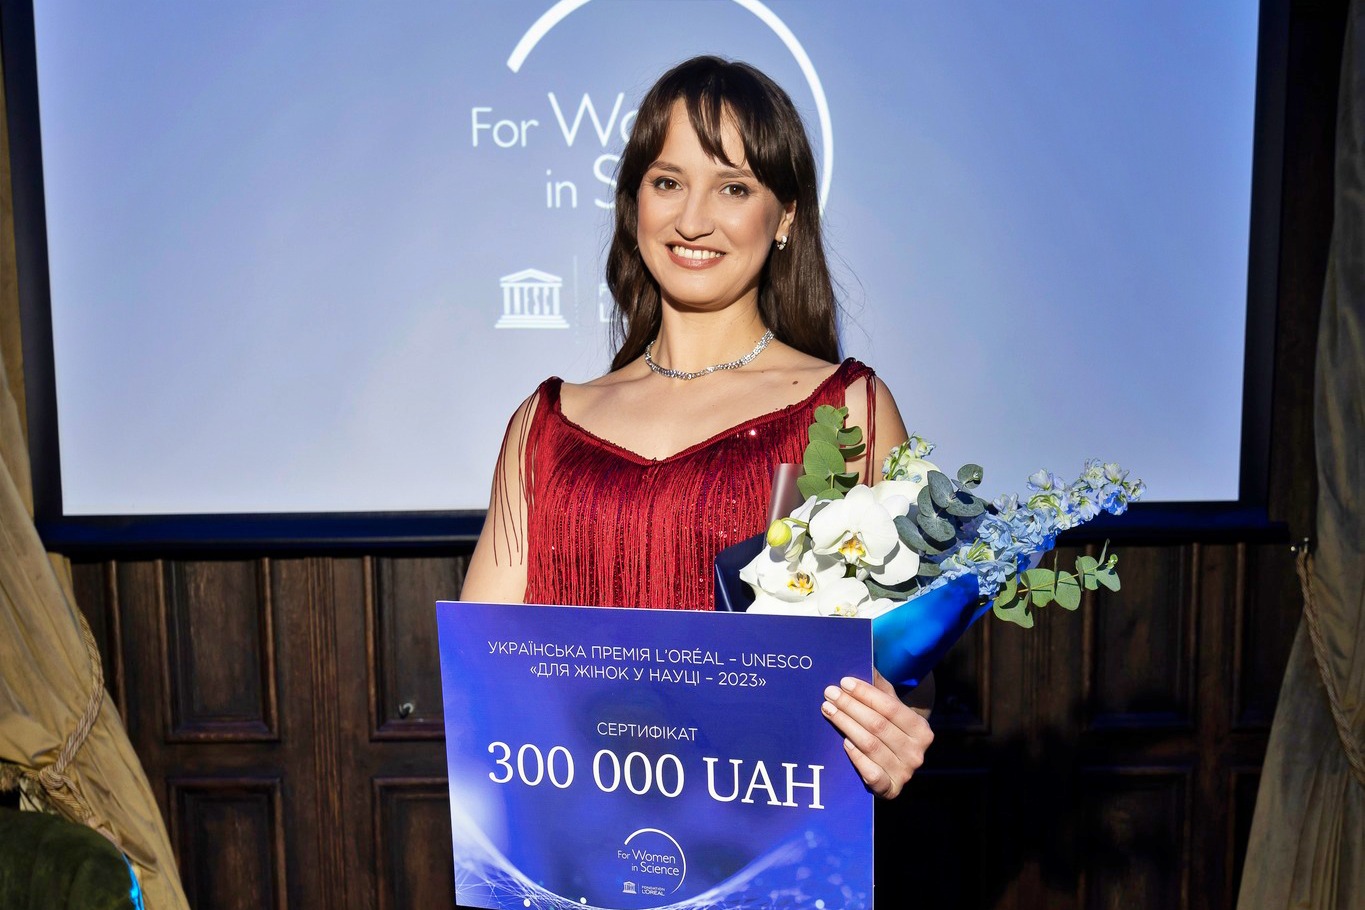 Професорка Львівського університету Христина Гнатенко – переможниця конкурсу на здобуття Премії L’Oreal-UNESCO «Для жінок у науці»